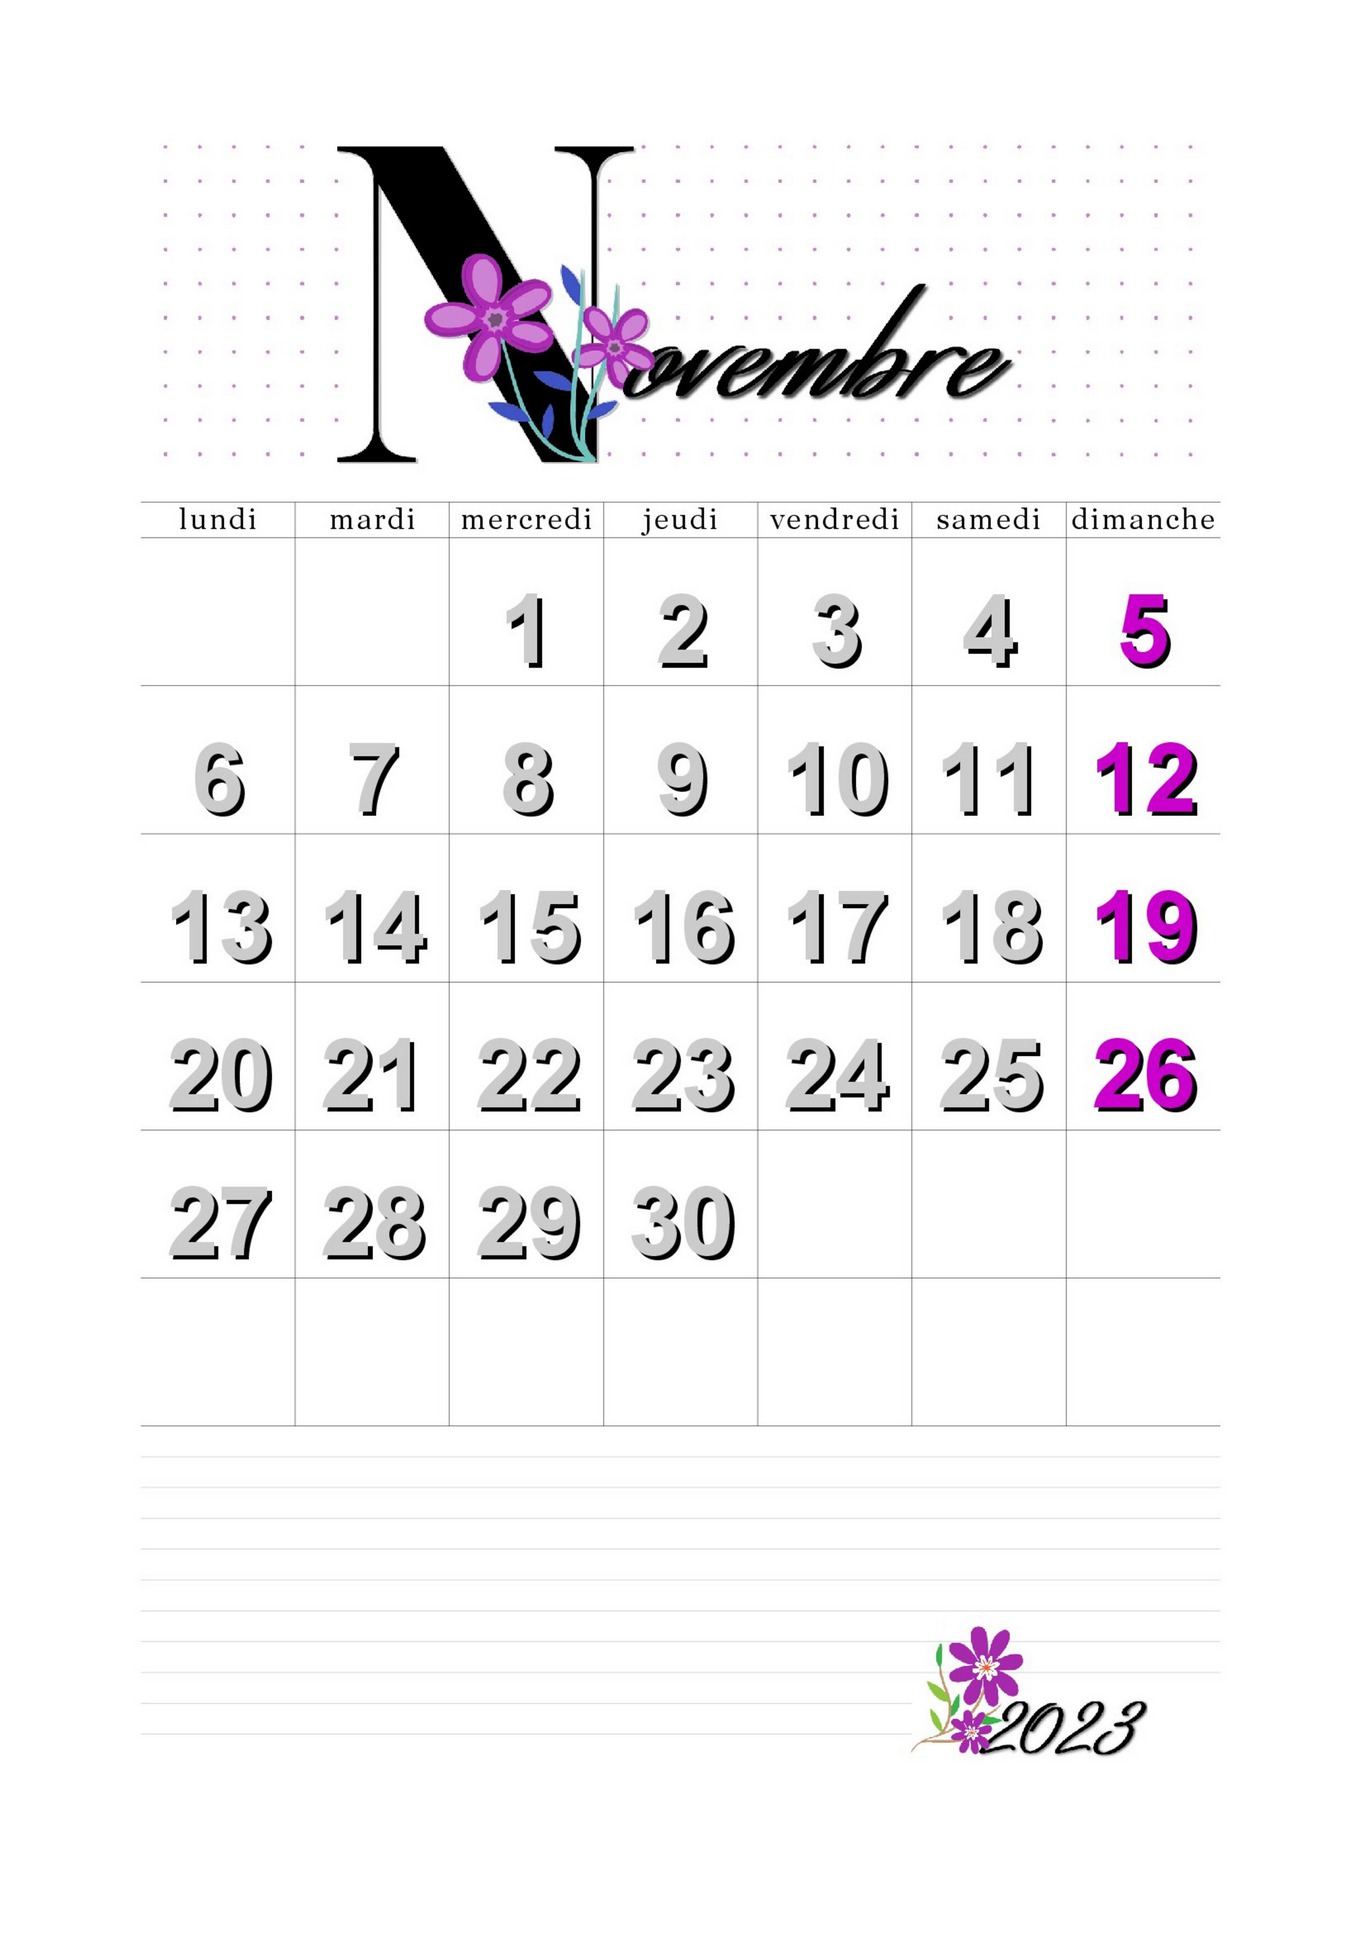 calendrier novembre 2022 en francais